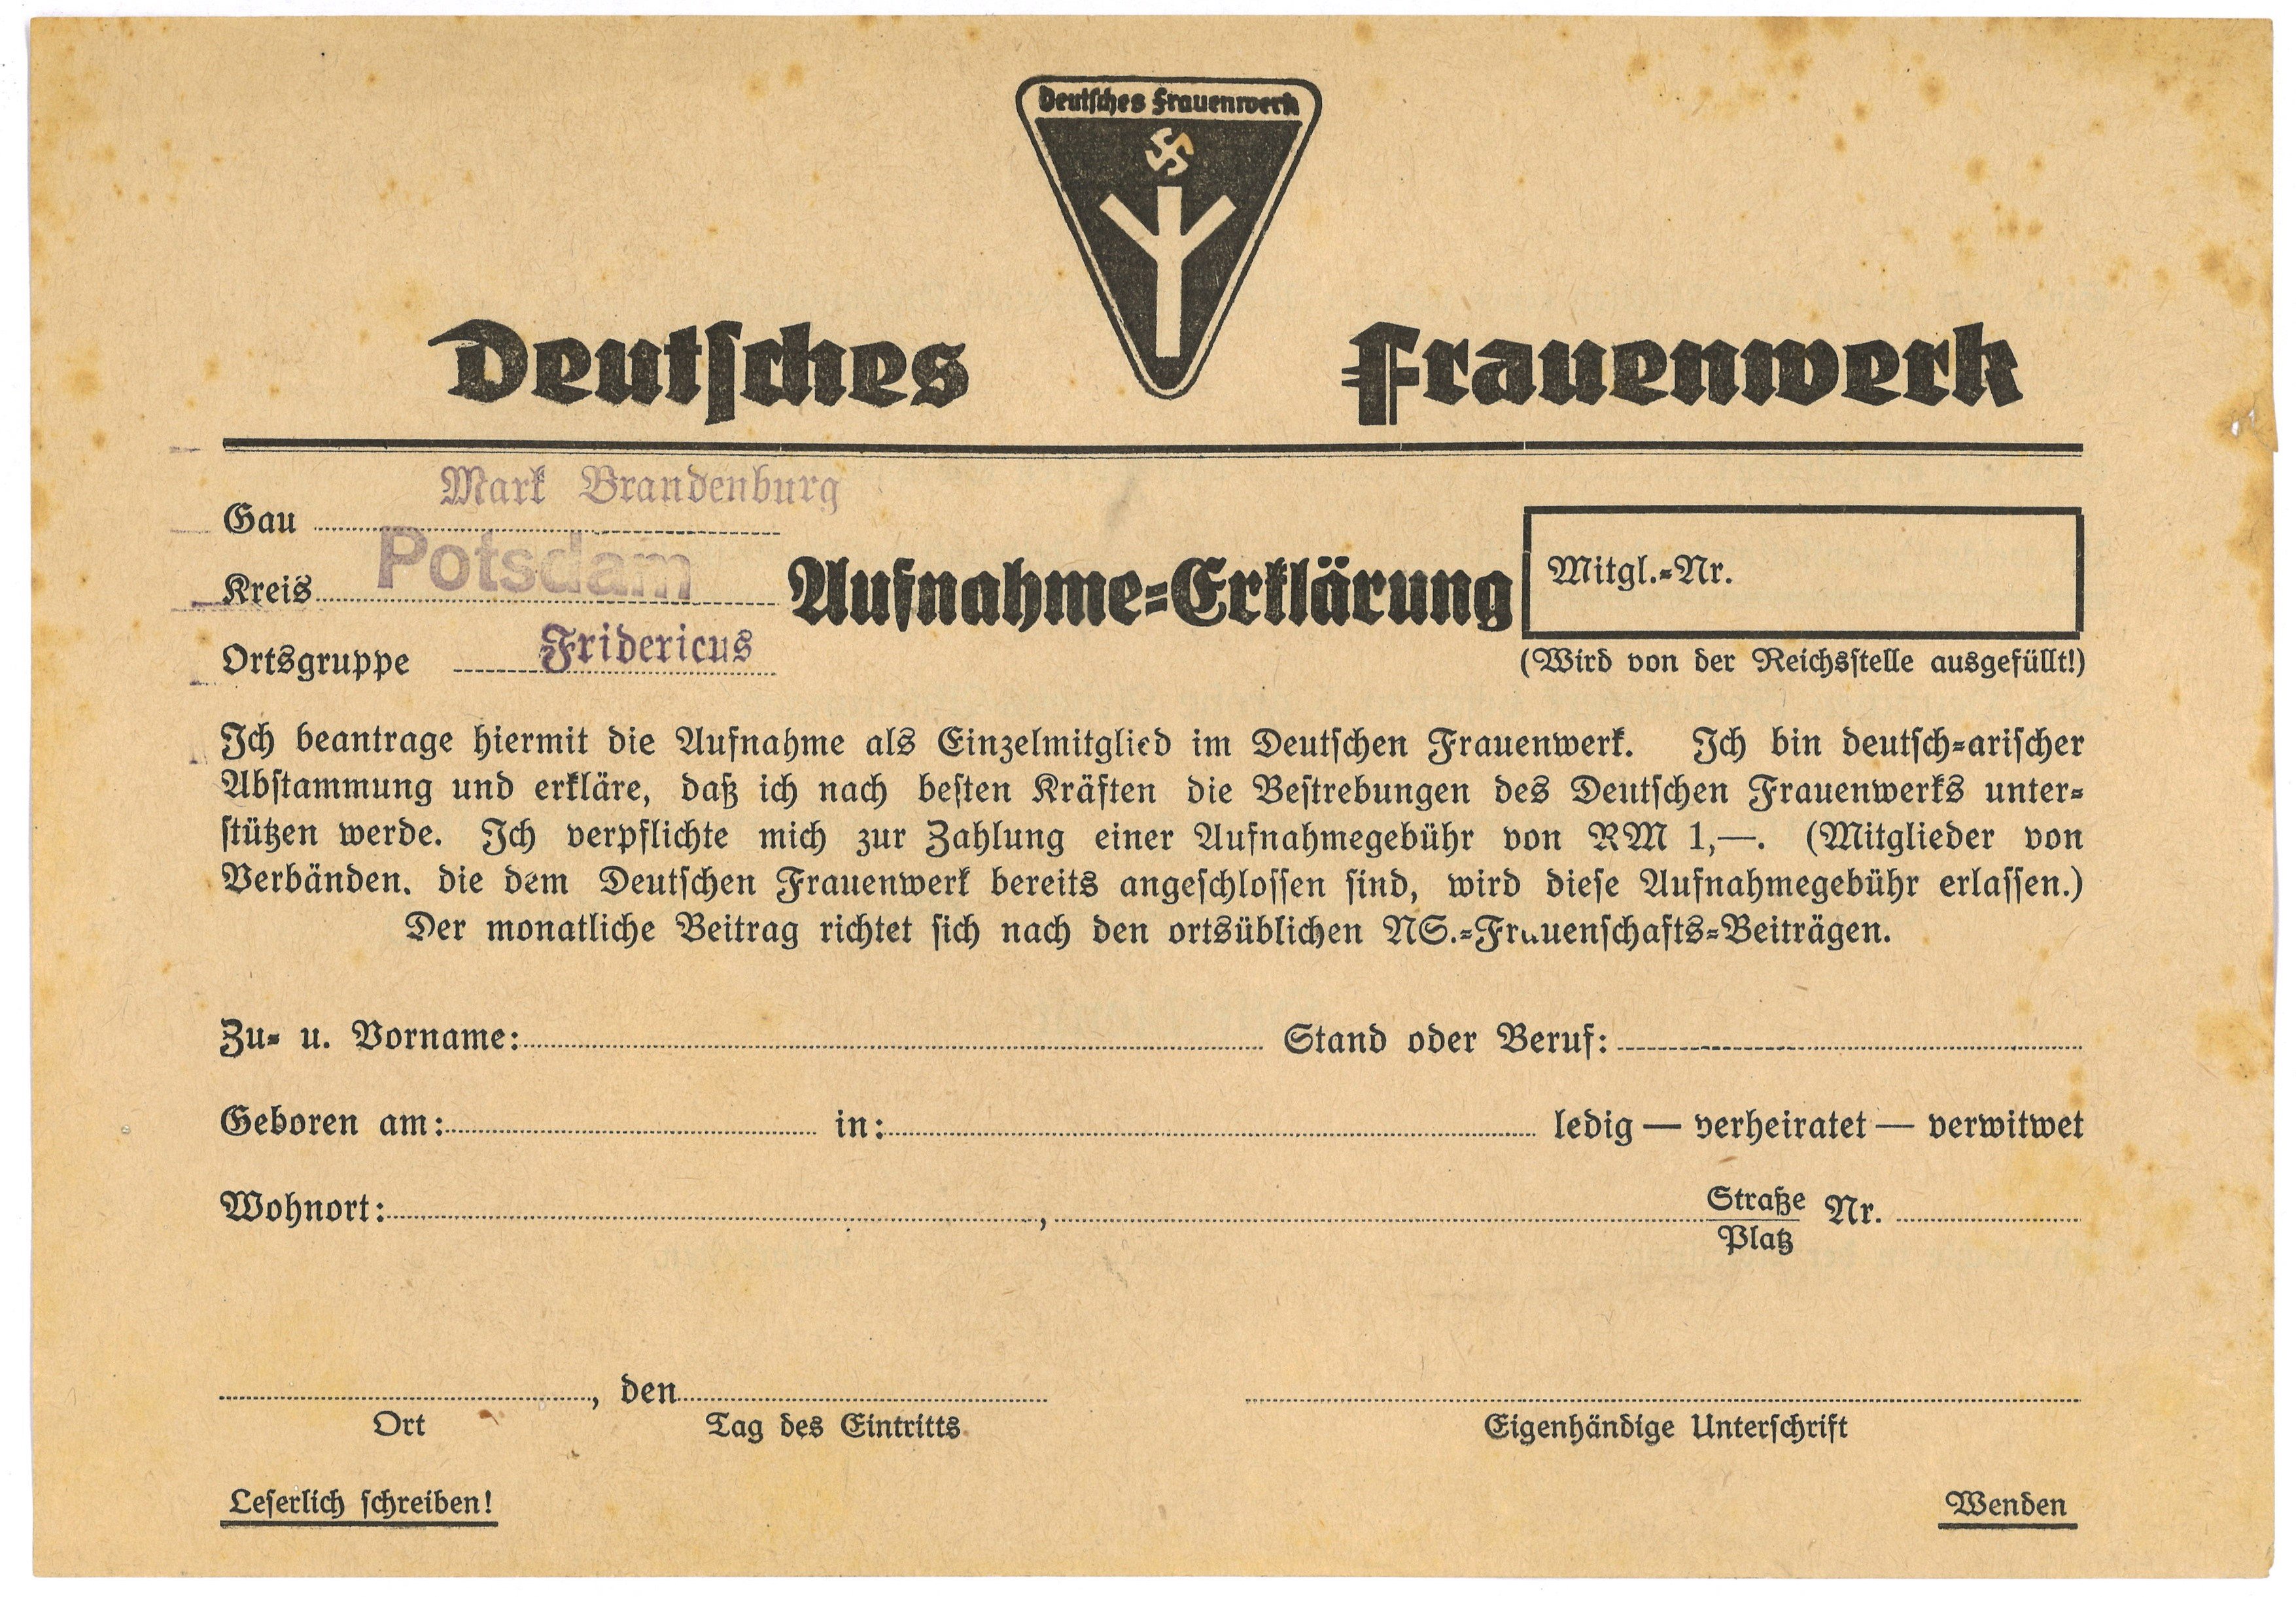 Aufnahmeformular für das Deutsche Frauenwerk (um 1933) (Landesgeschichtliche Vereinigung für die Mark Brandenburg e.V., Archiv CC BY)